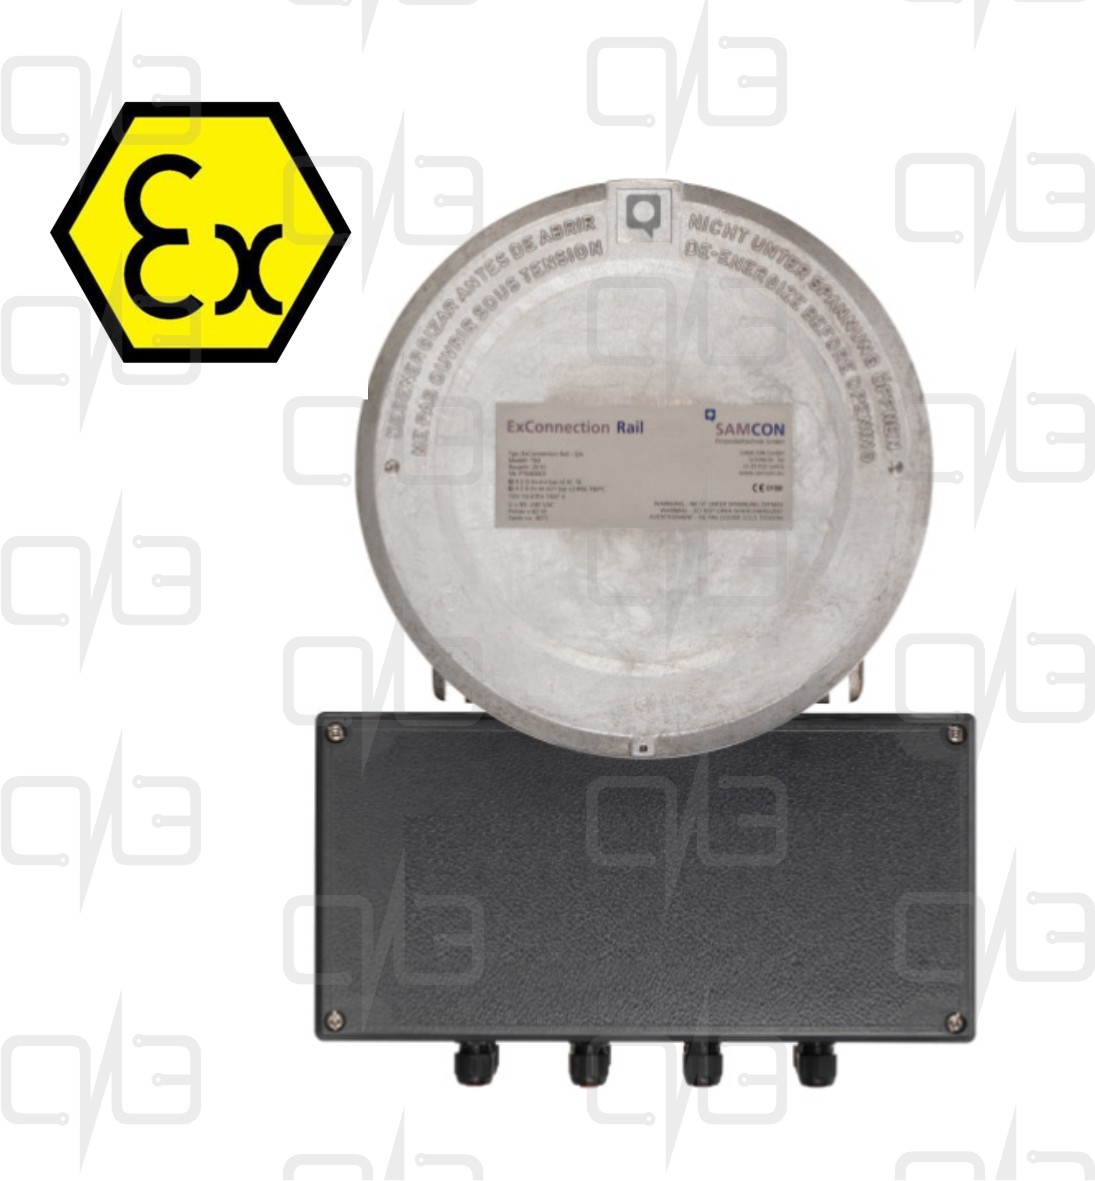 T04-DE-Q-001 ExConnection Rail - Q Видеосервер с источником питания и точкой доступа Ethernet